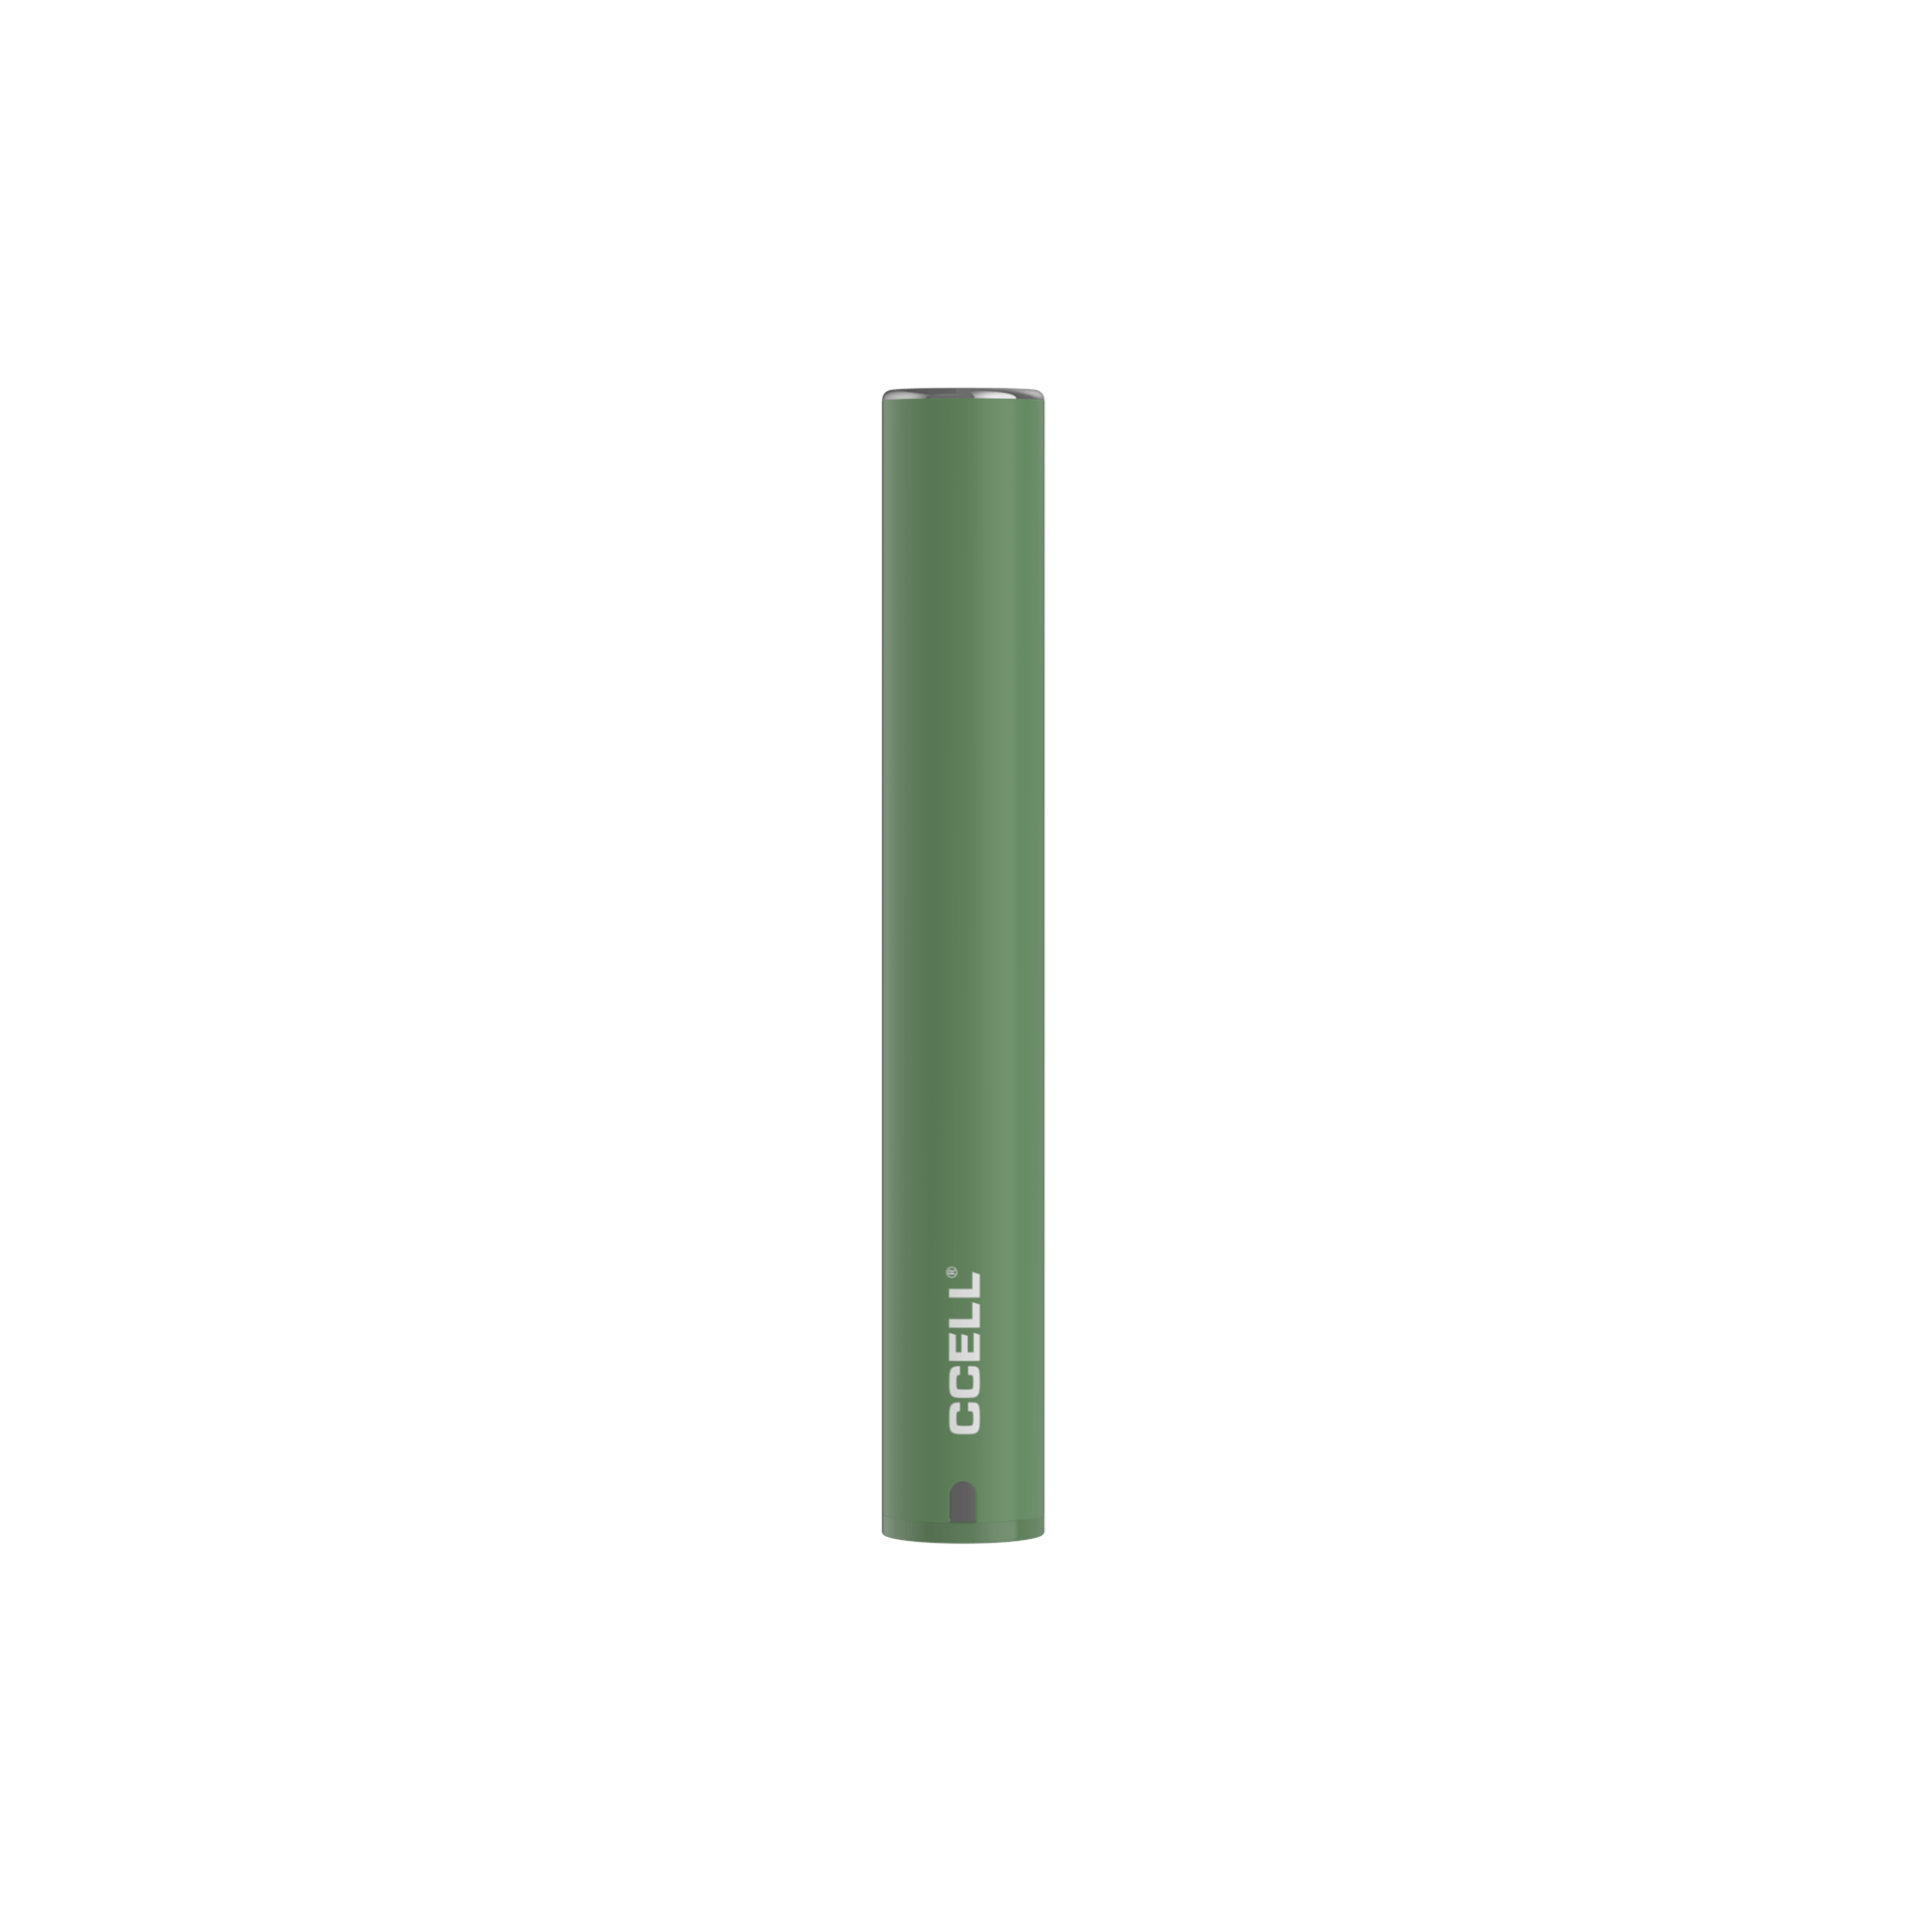 Batterie CCELL + Vape Pen Wiederaufladbar - - Weedeo